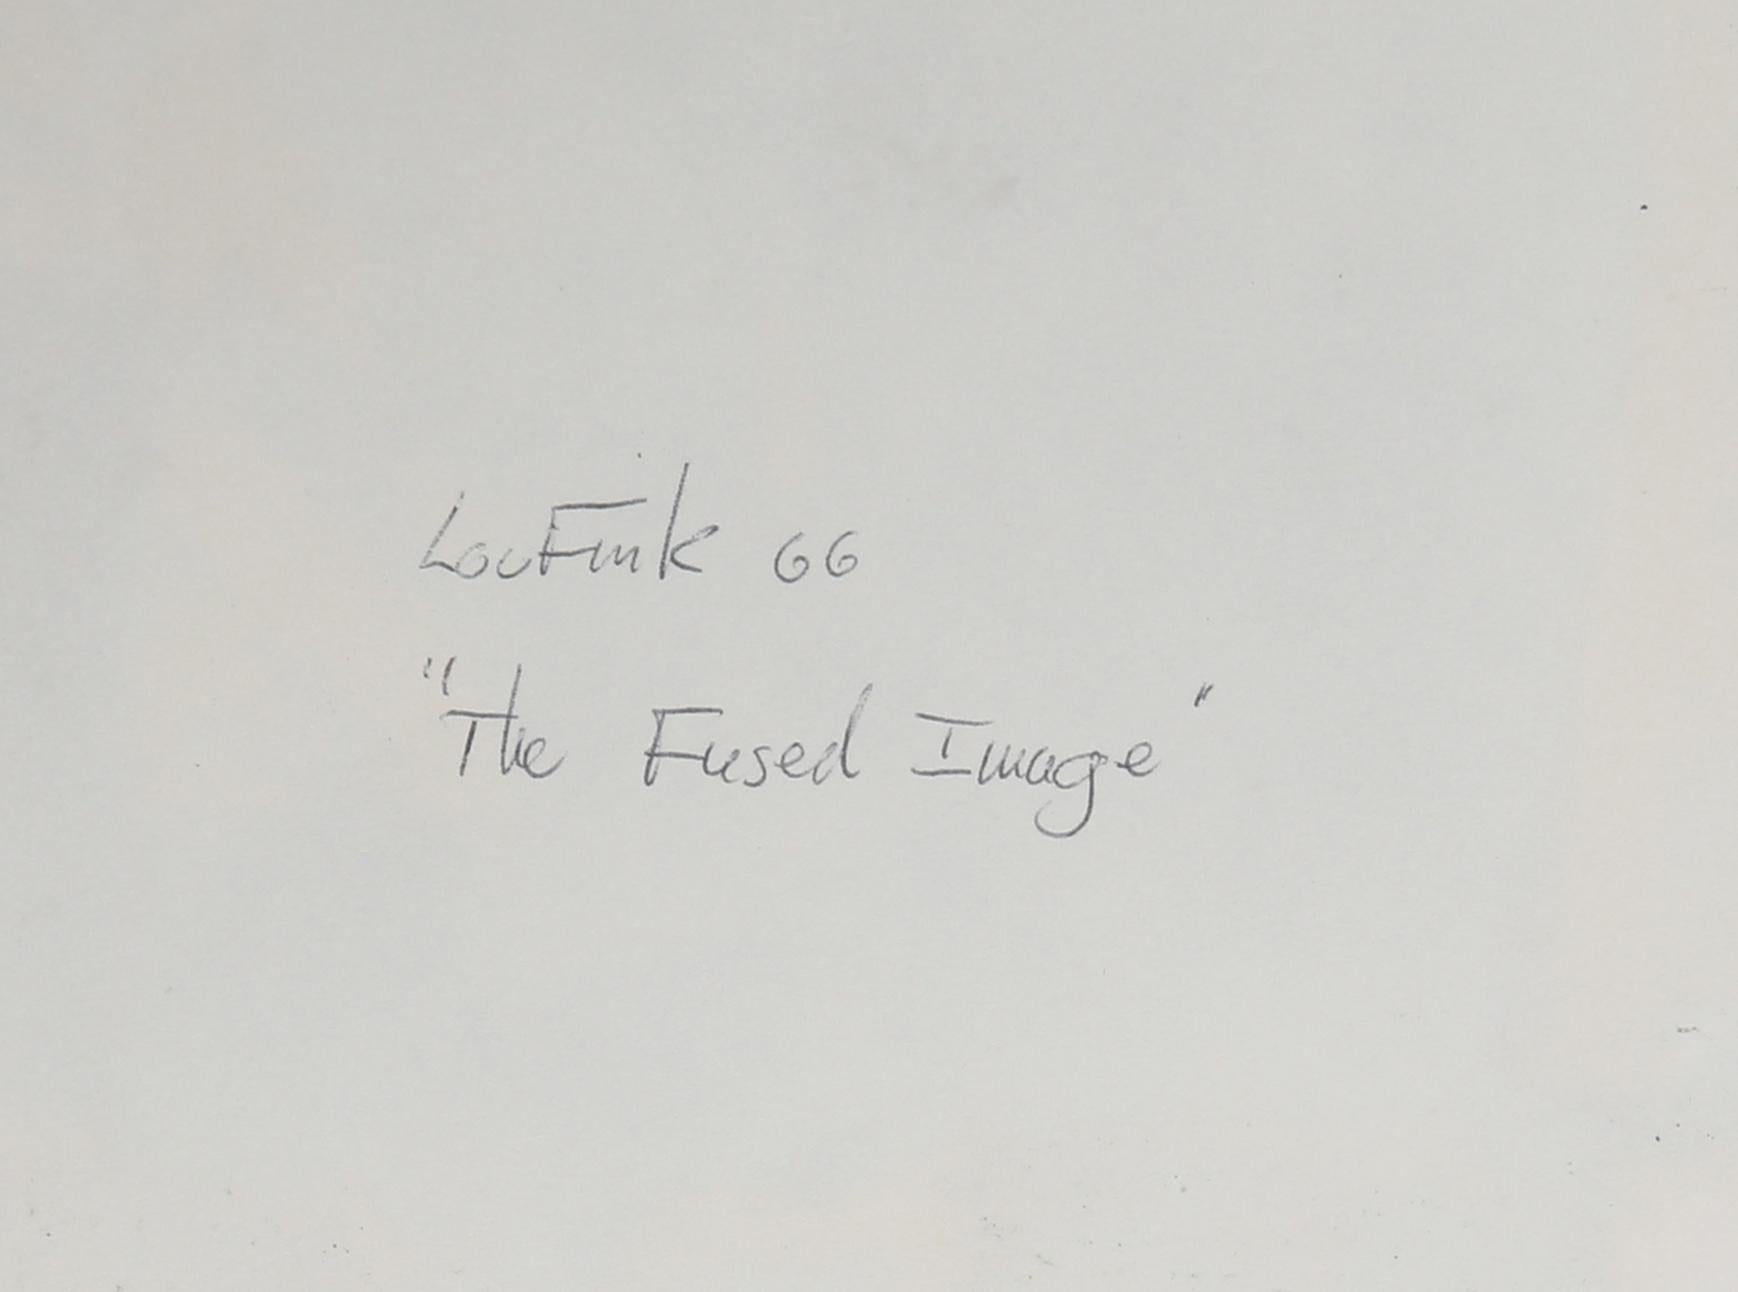 Artiste : Lou Fink, américain (1925 - 1980)
Titre : Danseurs espagnols
Année : 1964
Moyen : Huile sur panneau, signée, datée et titrée au verso
Taille : 10 in. x 14 in. (25,4 cm x 35,56 cm)
Taille du cadre : 18 x 21 pouces